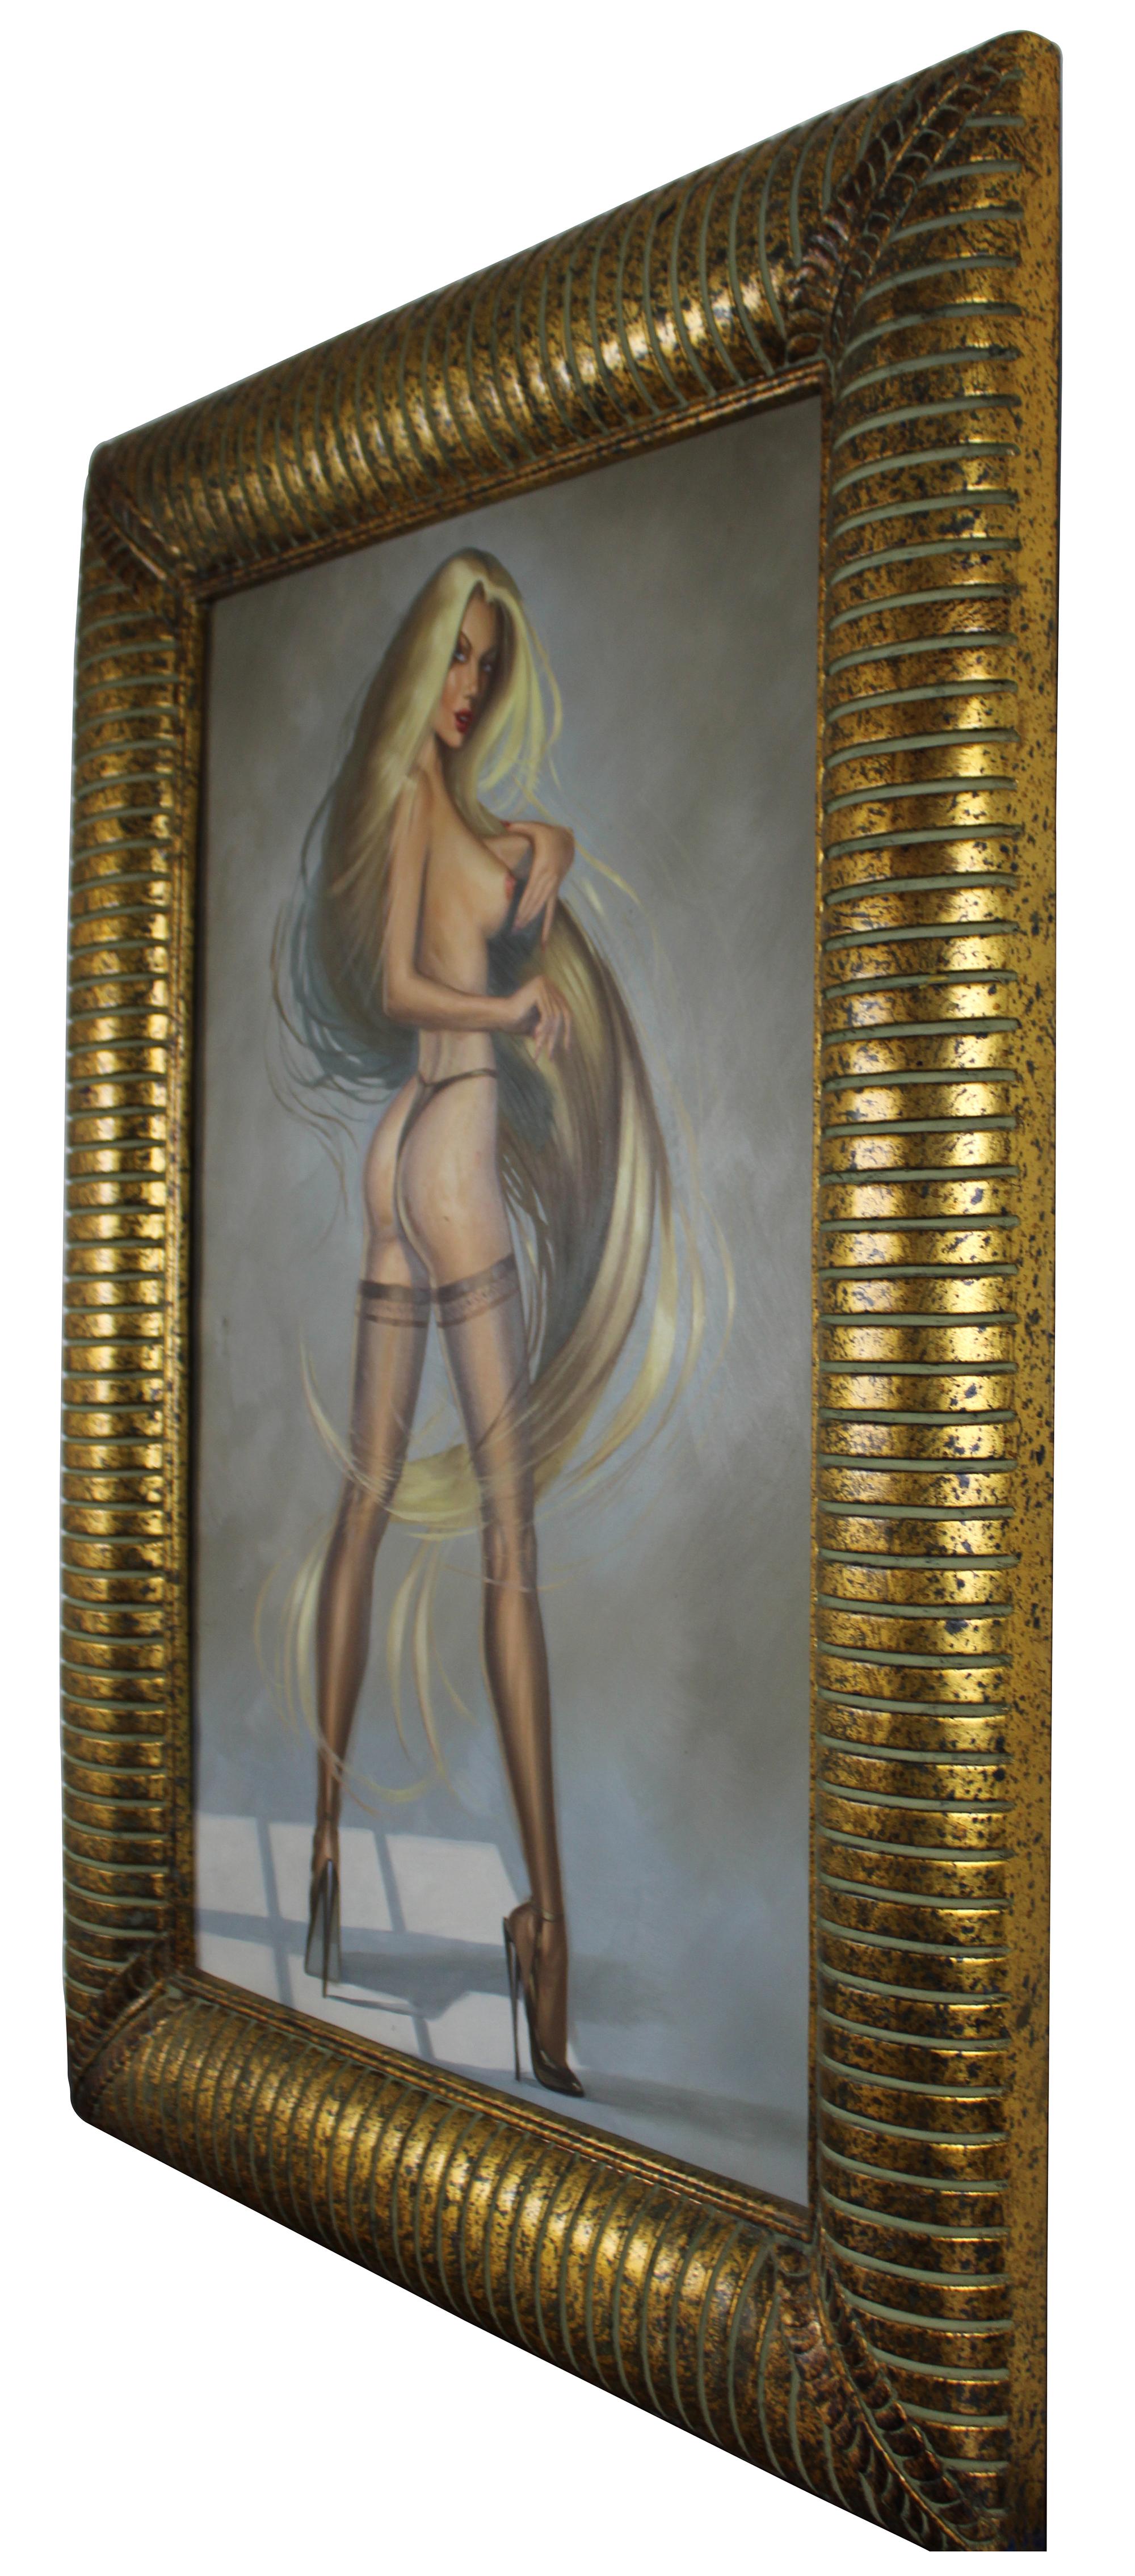 20. Jahrhundert erotische Frau Ölgemälde. Zeigt eine blonde Frau mit langem, wallendem Haar, bekleidet mit Dessous und High Heels. In Gold gerahmt. Nicht signiert.

Maße: Ohne Rahmen 23,5